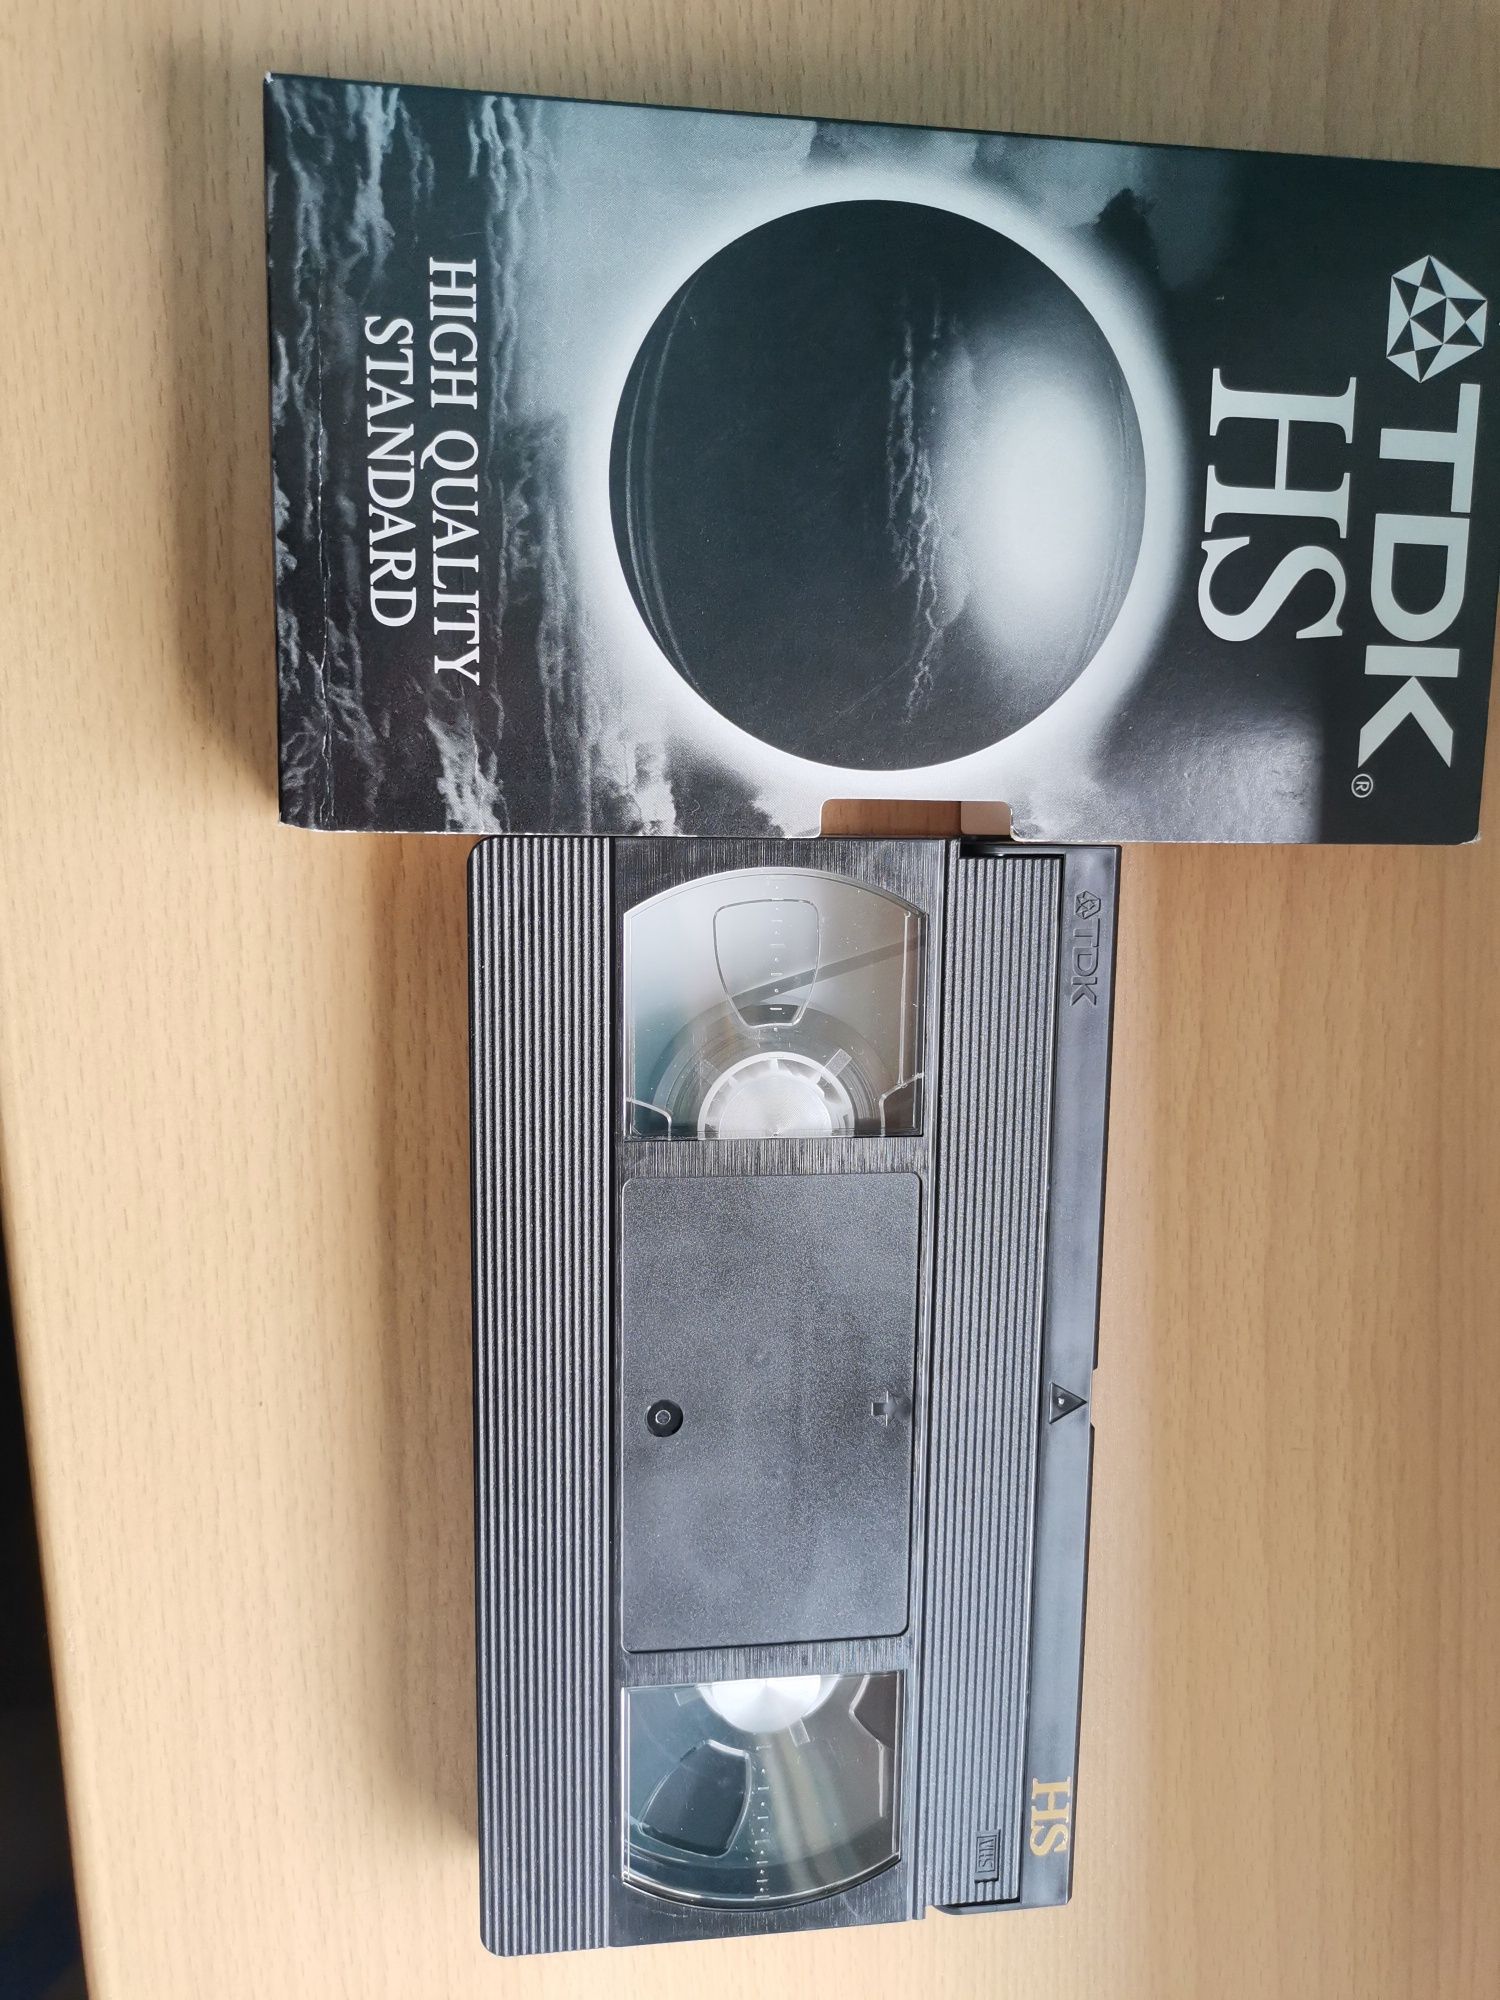 Kaseta VHS TDK 180HS - NOWA 21 sztuk